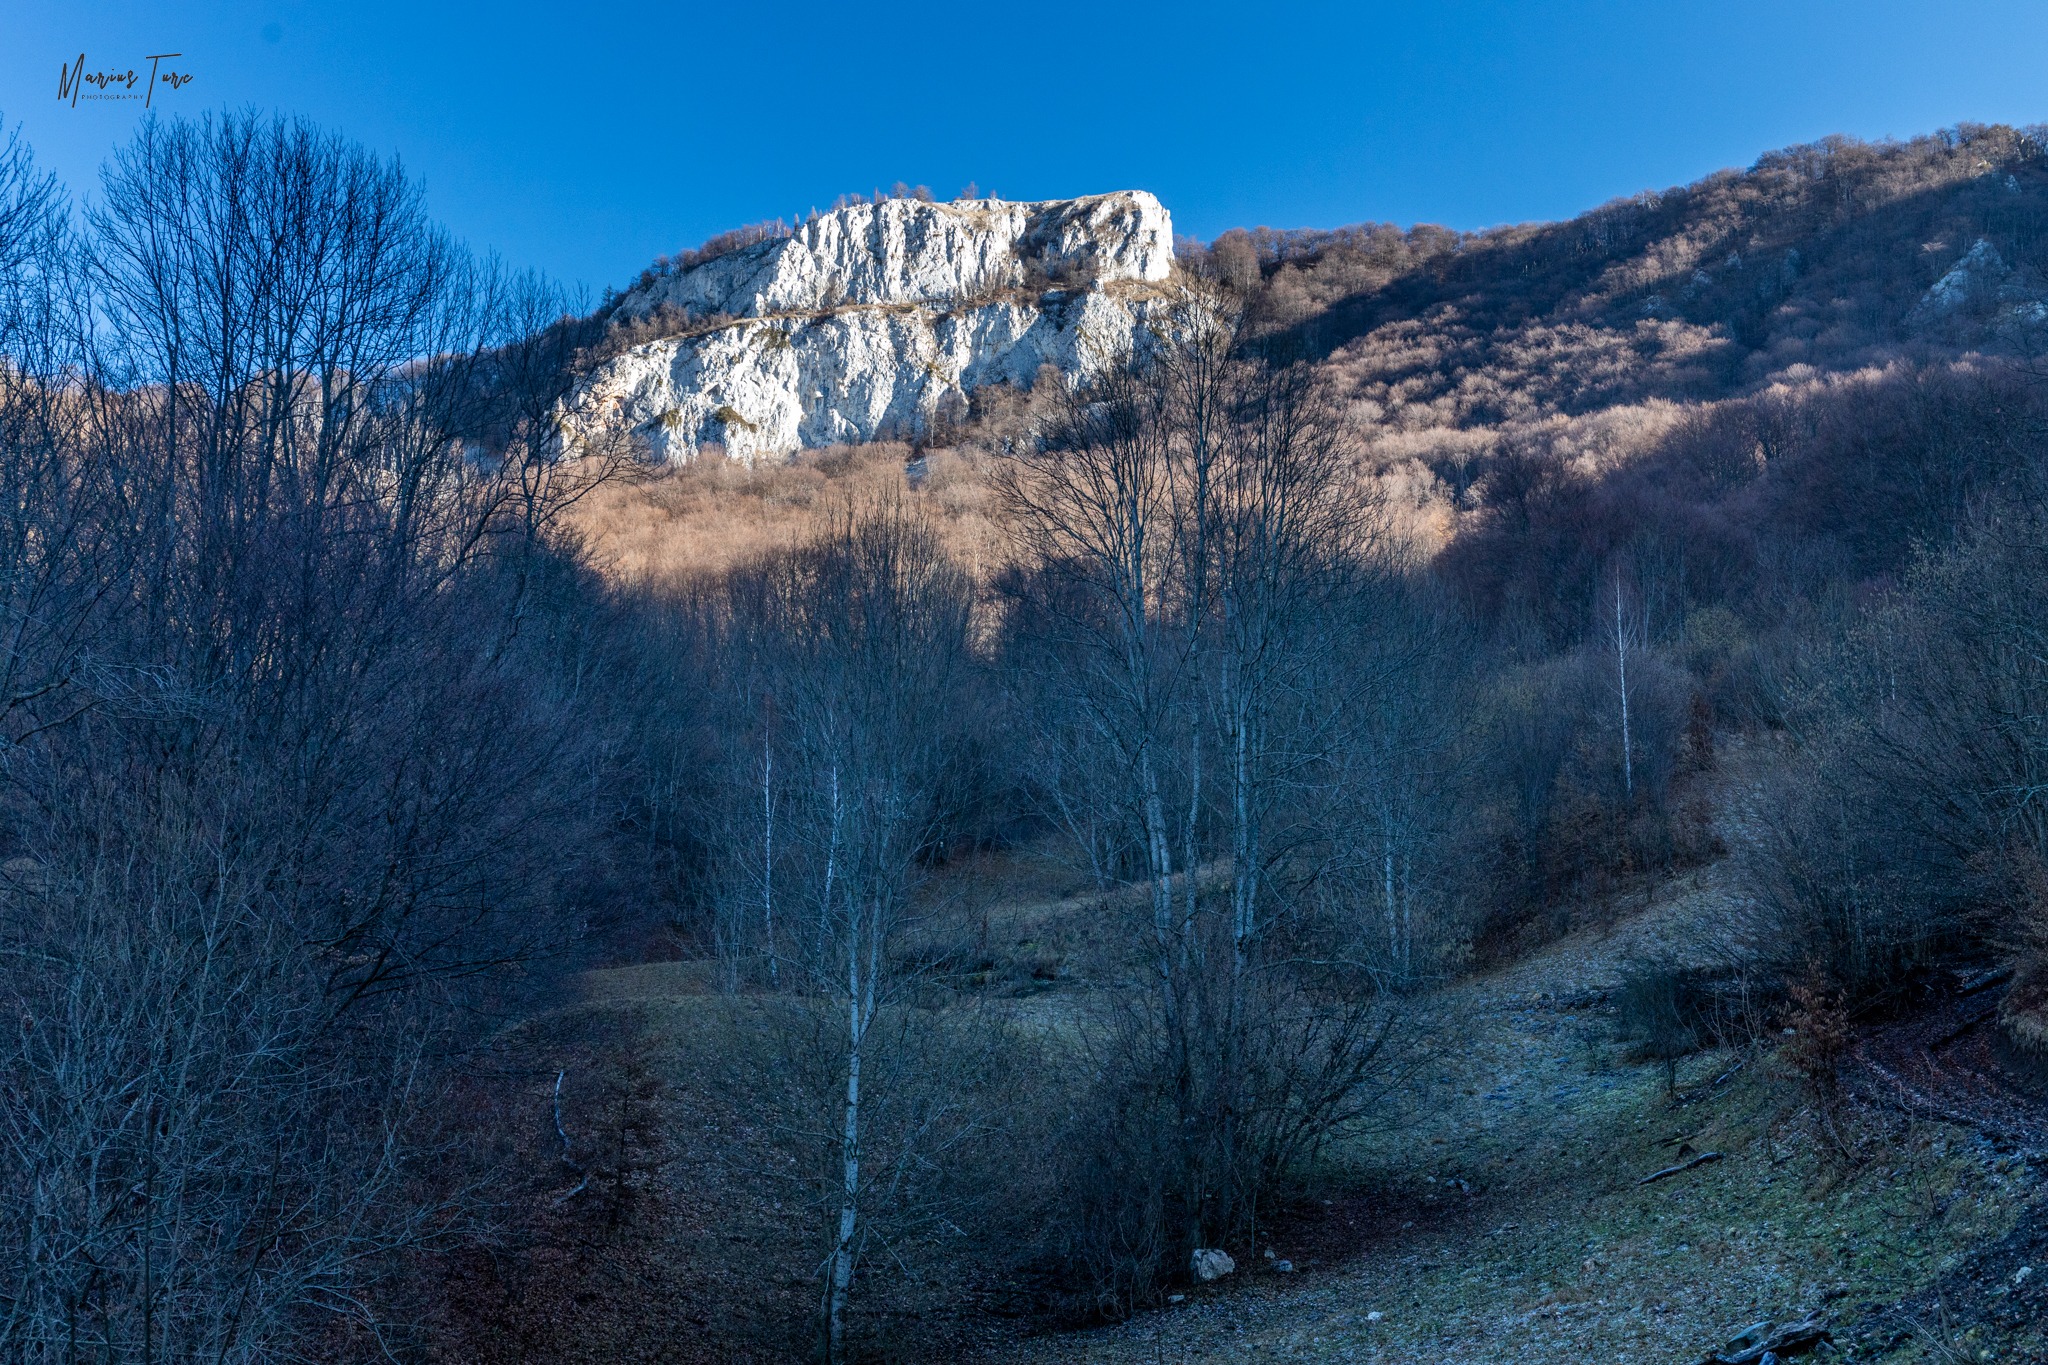  Stâncările Vârfului Jaru (1221 m) impozante - Marius Turc